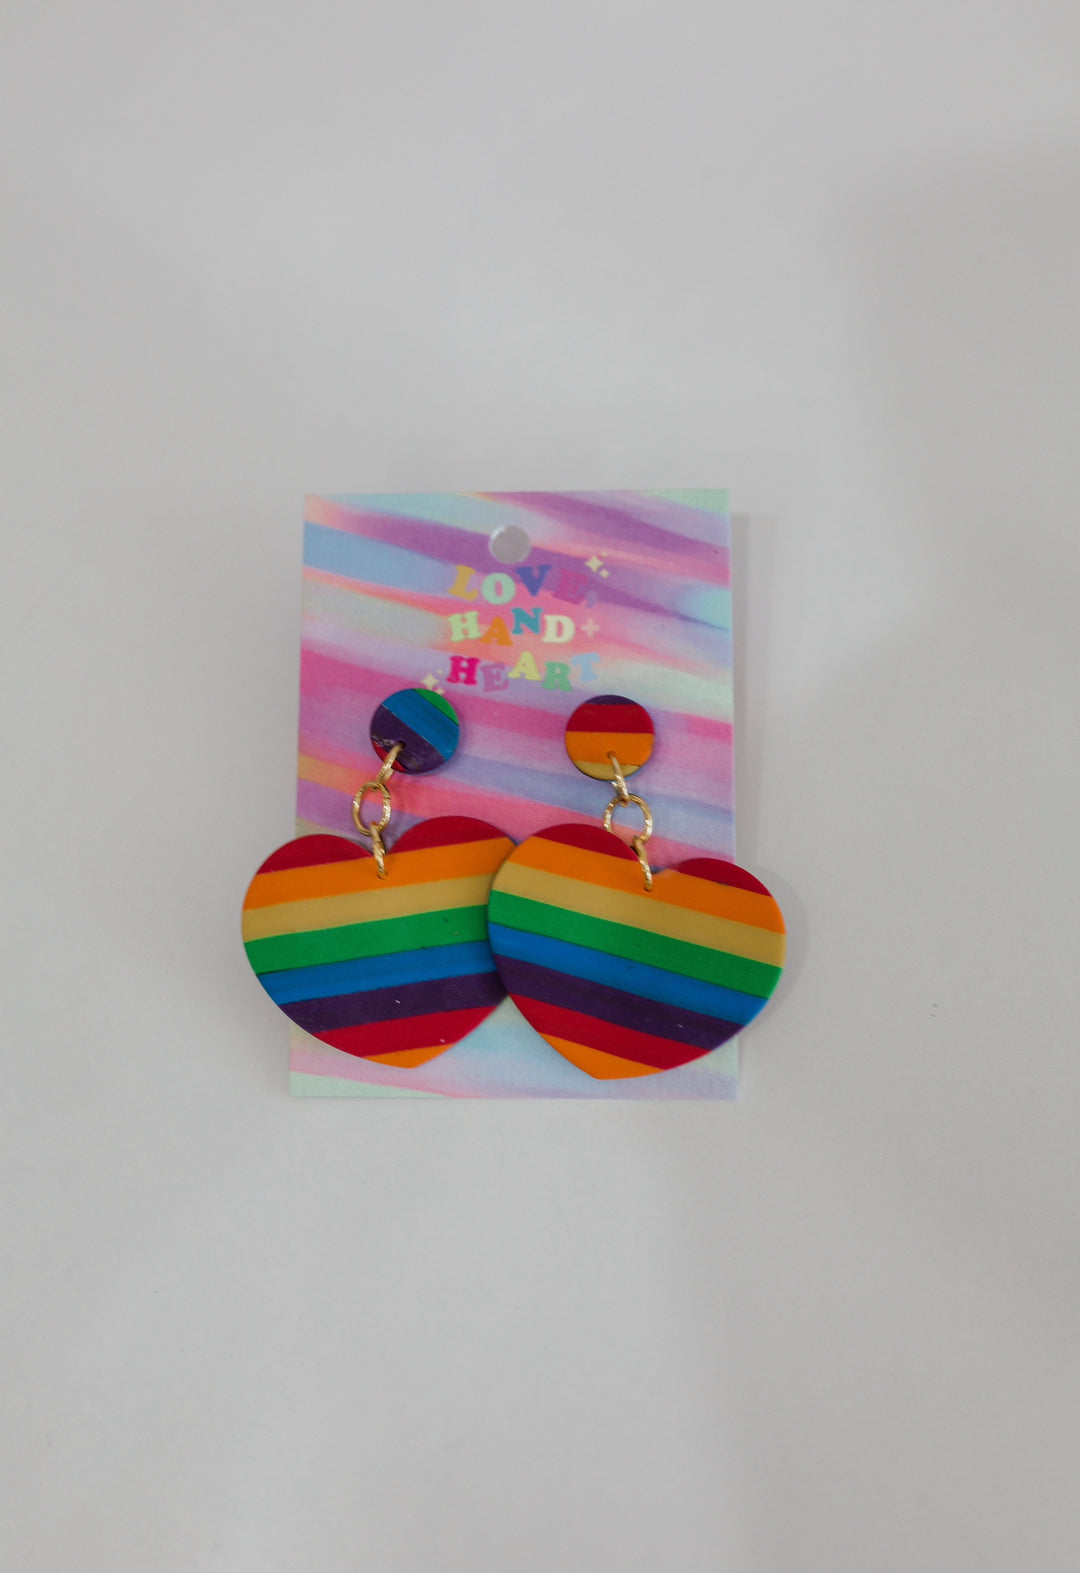 Love Hand Heart Pride Earrings - Stripe Rainbow Hearts